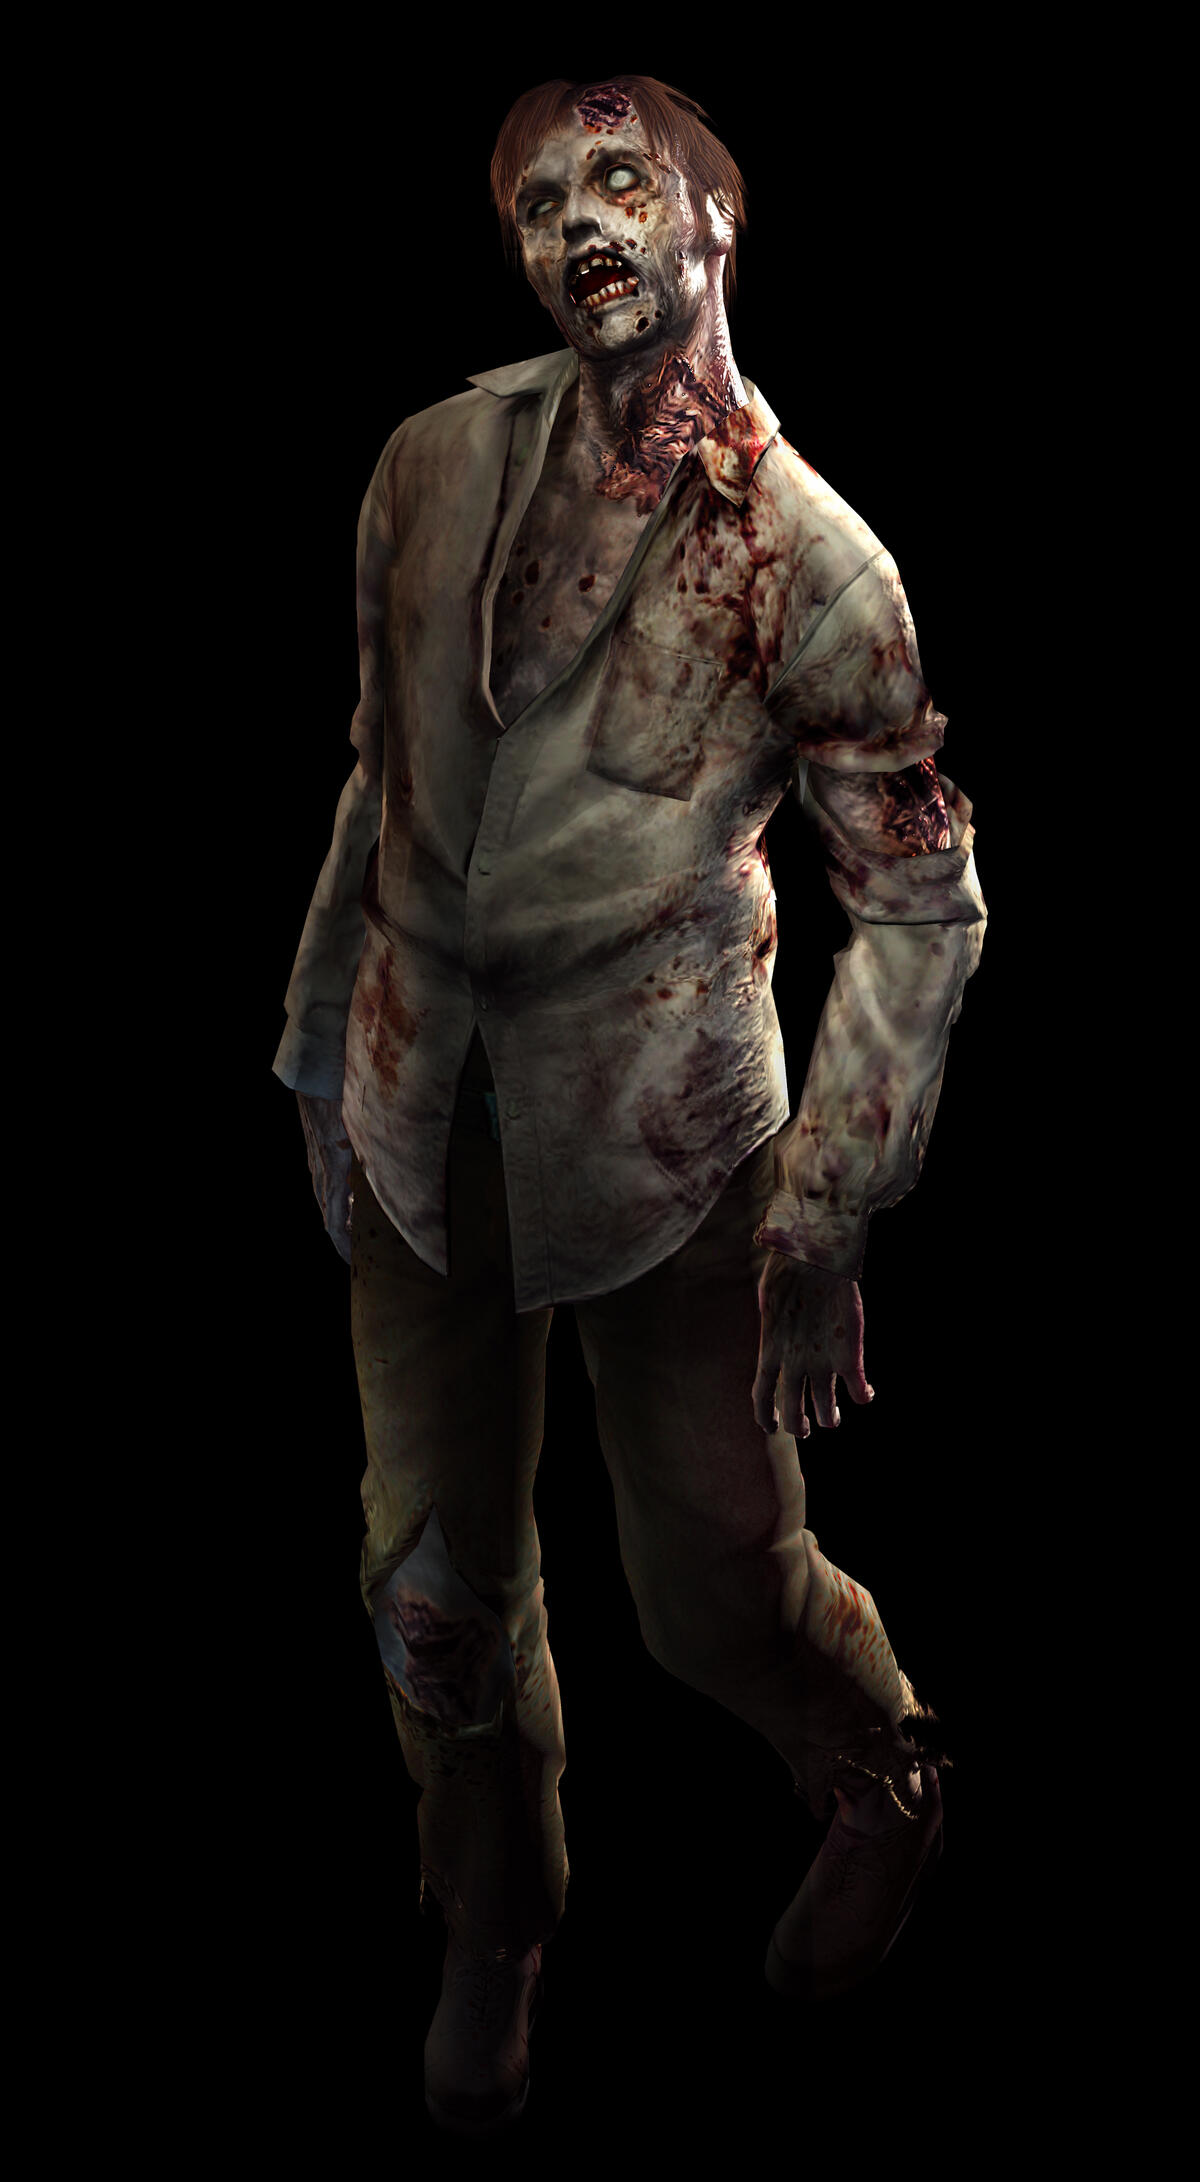 A walking zombie